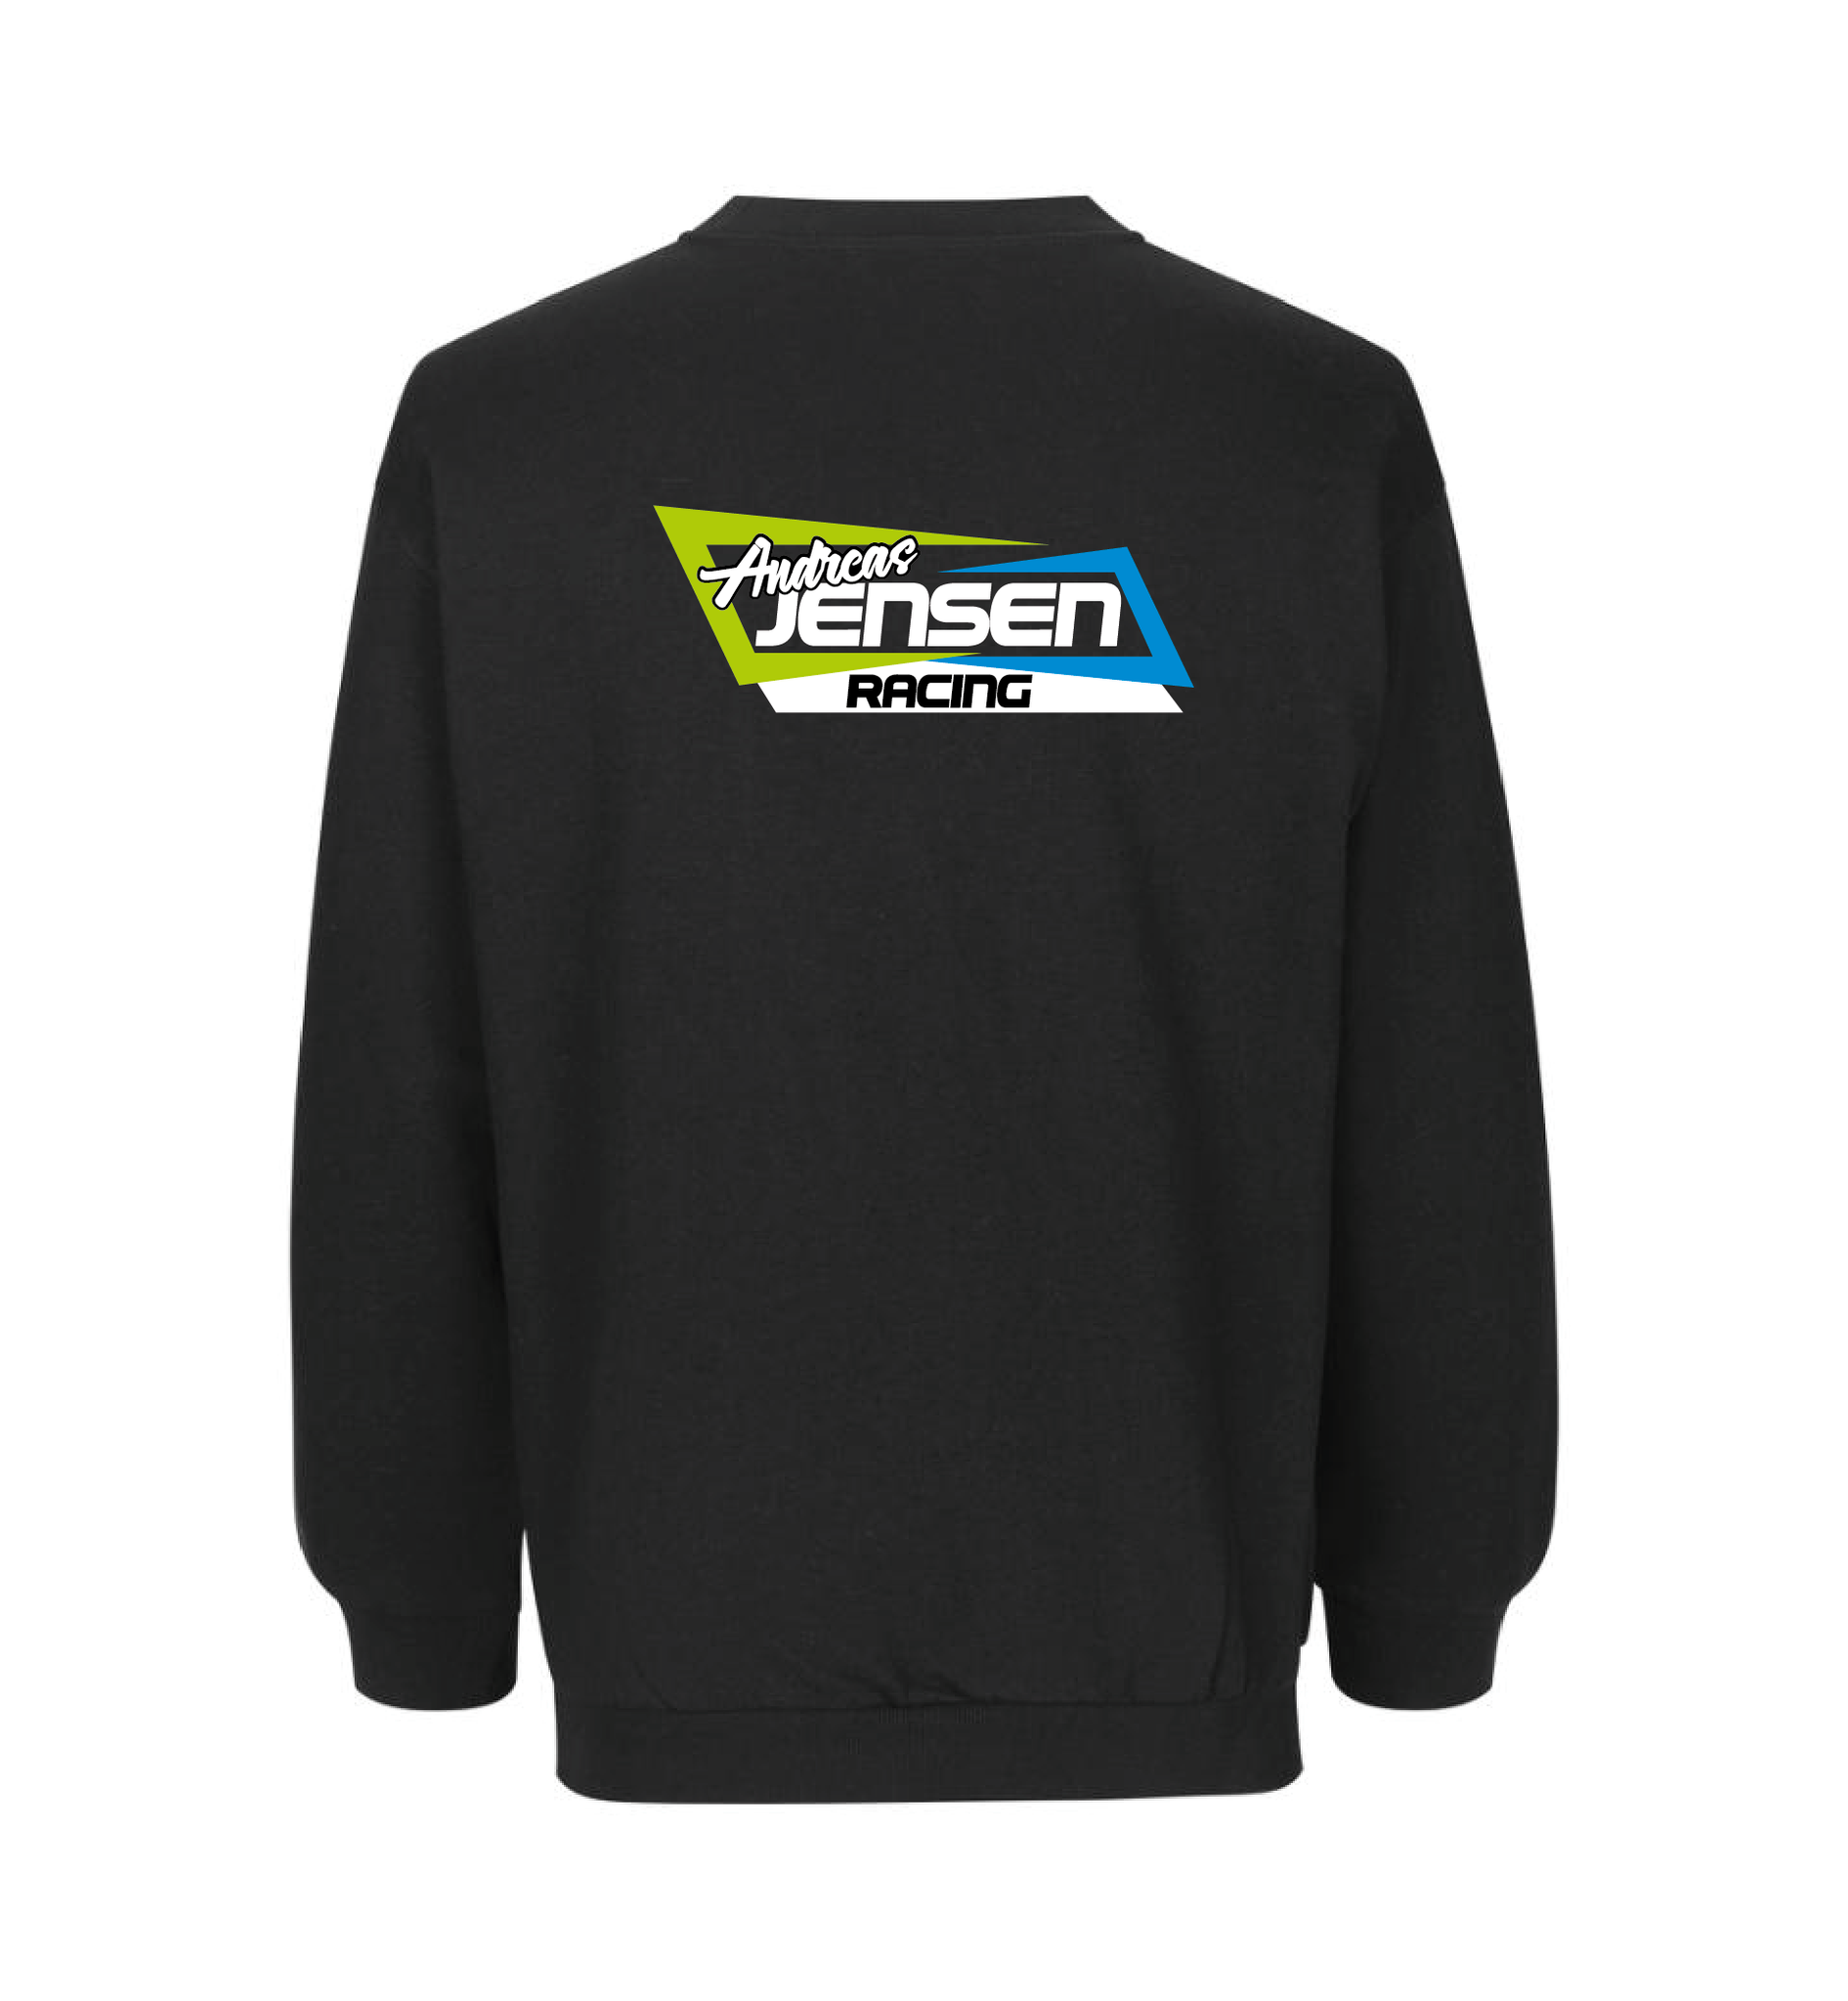 Andreas Jensen Racing Sweatshirt